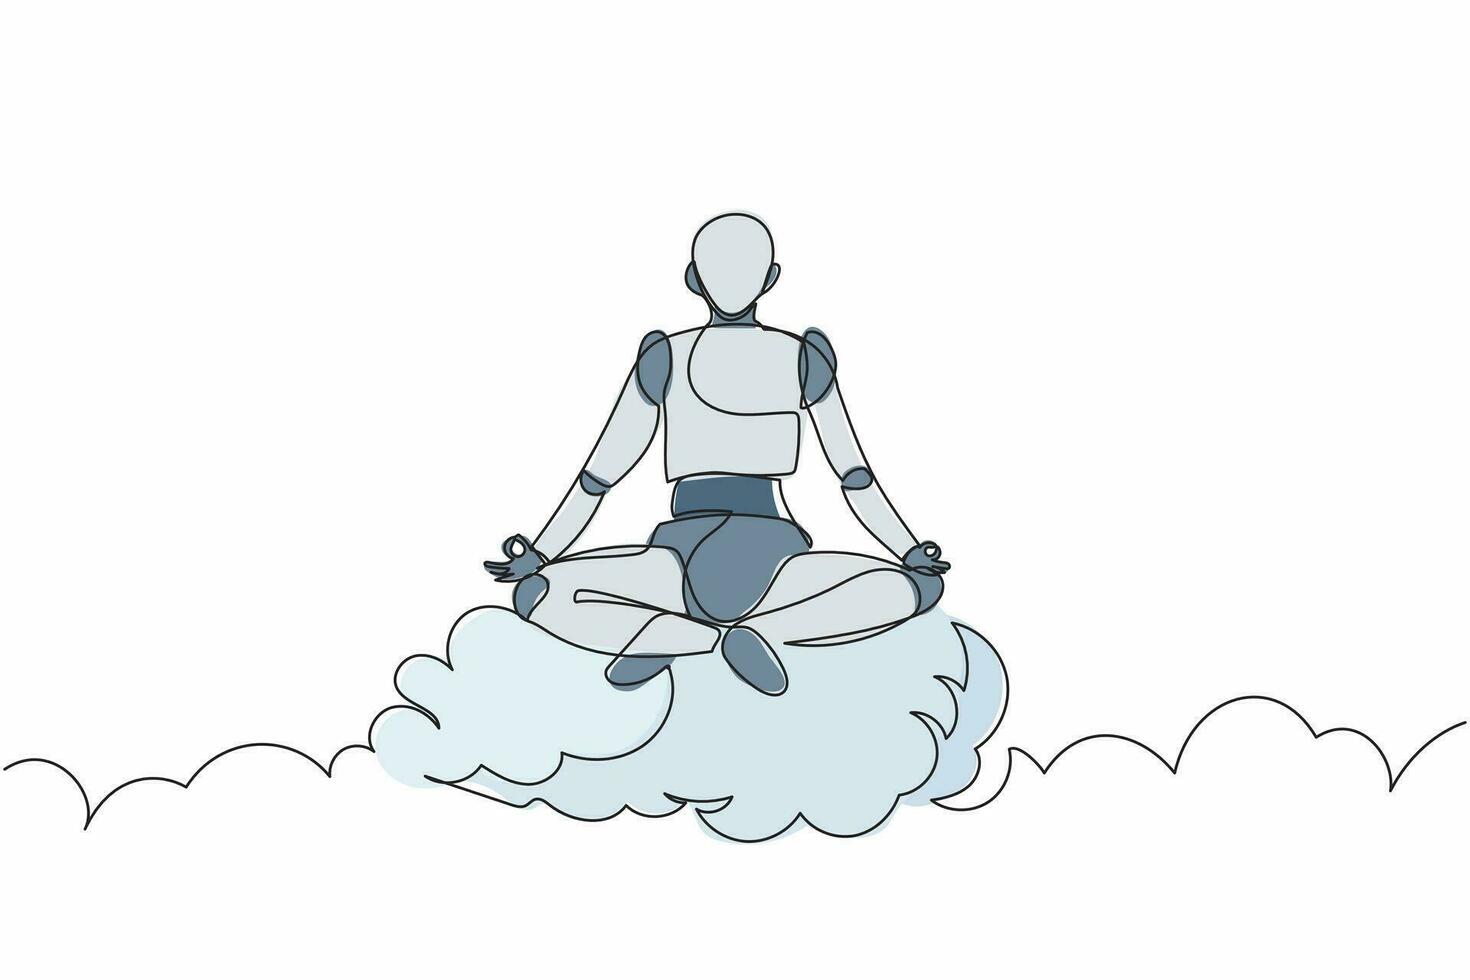 un seul robot de dessin en ligne continue médite et se repose en position de yoga sur les nuages. intelligence artificielle robotique moderne. industrie de la technologie électronique. une ligne dessiner illustration vectorielle de conception vecteur